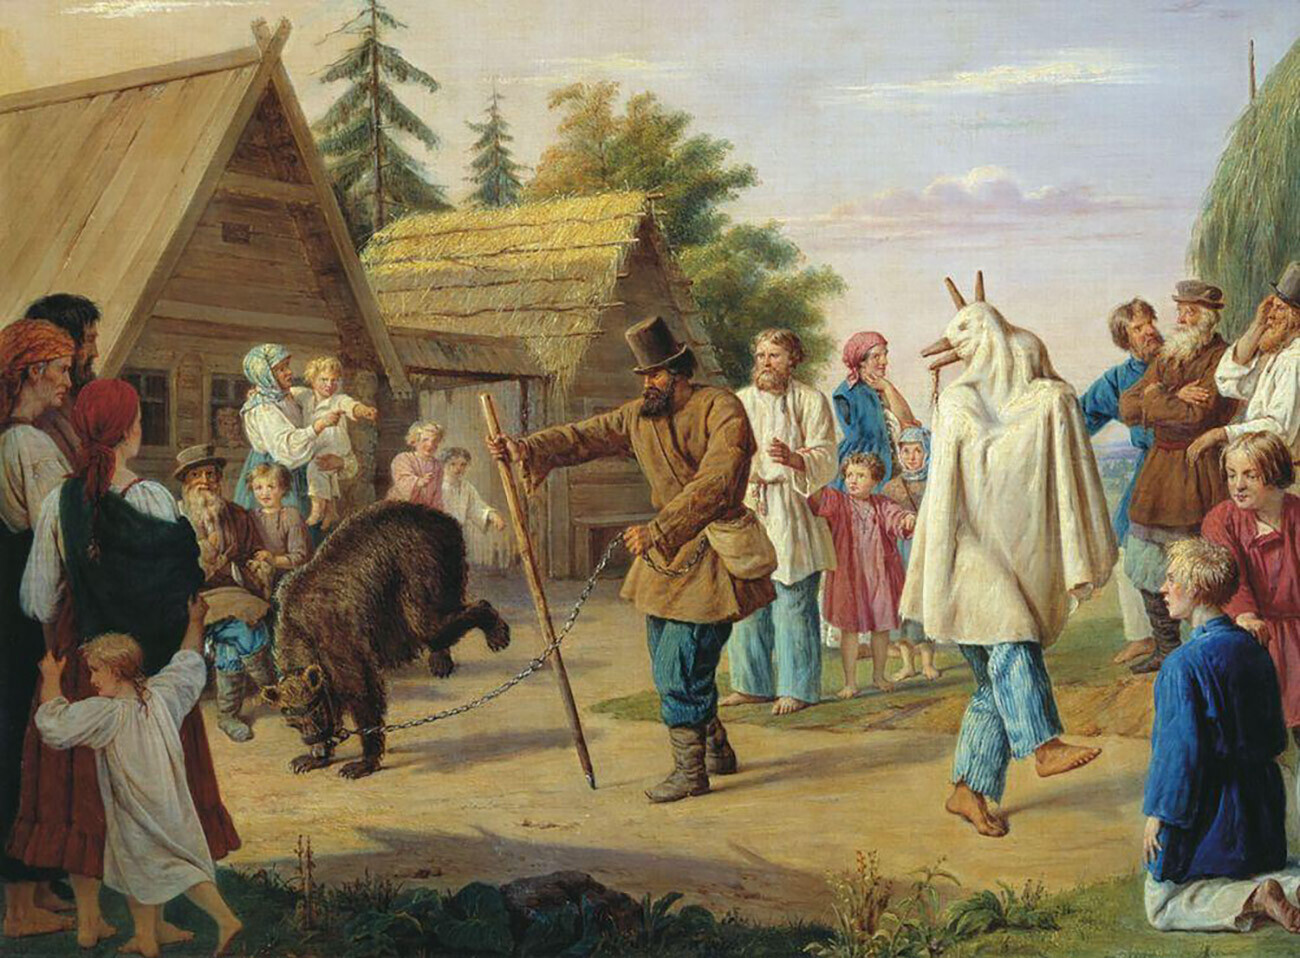 “Skomorokhs em uma aldeia”, de Franz Riess, 1857.
